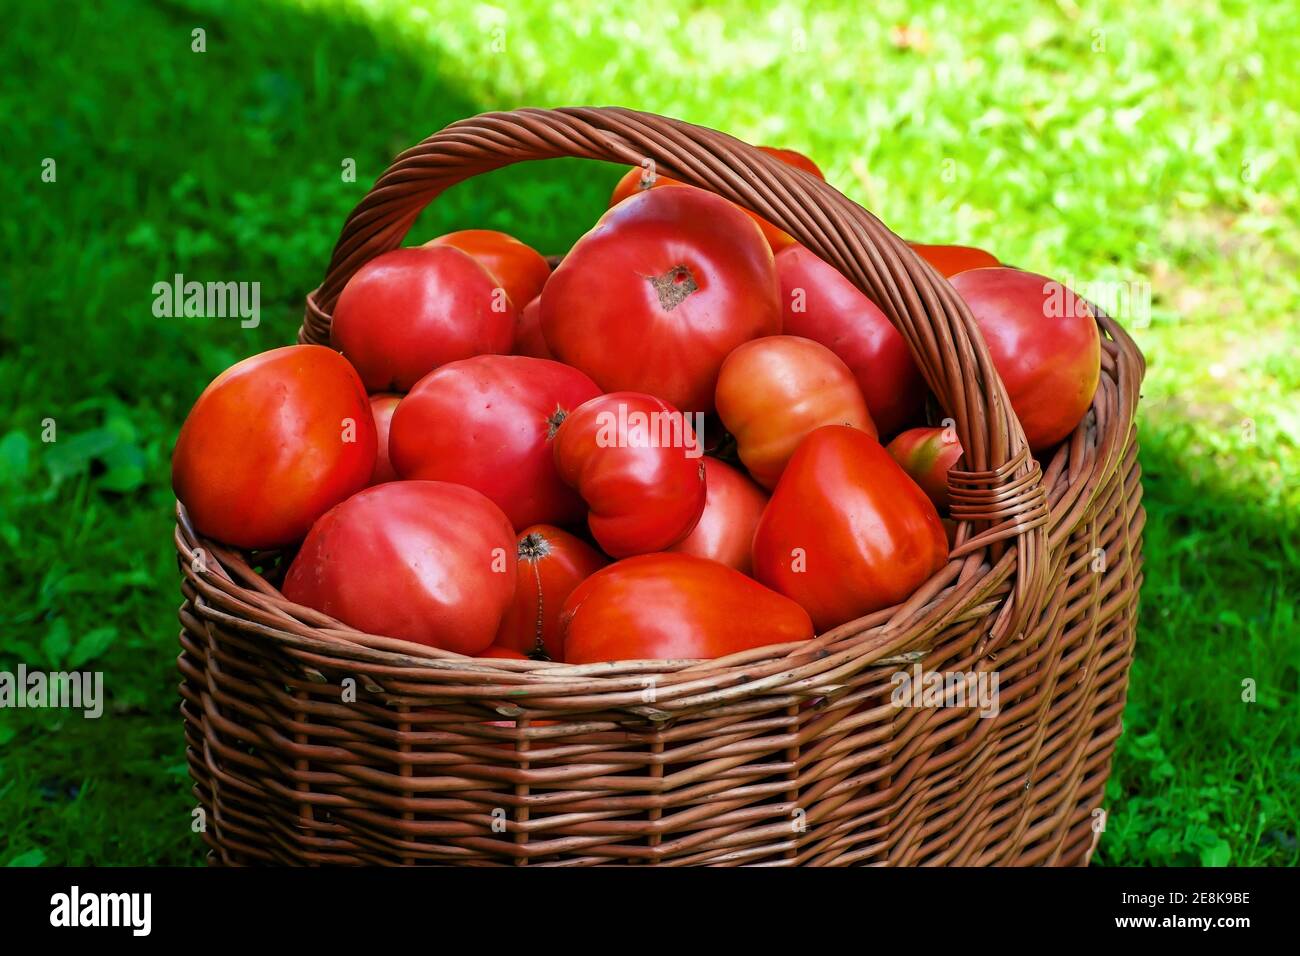 Tomates rojos grandes maduran en una cesta de mimbre de madera marrón recién cosechado del jardín orgánico en verano Foto de stock